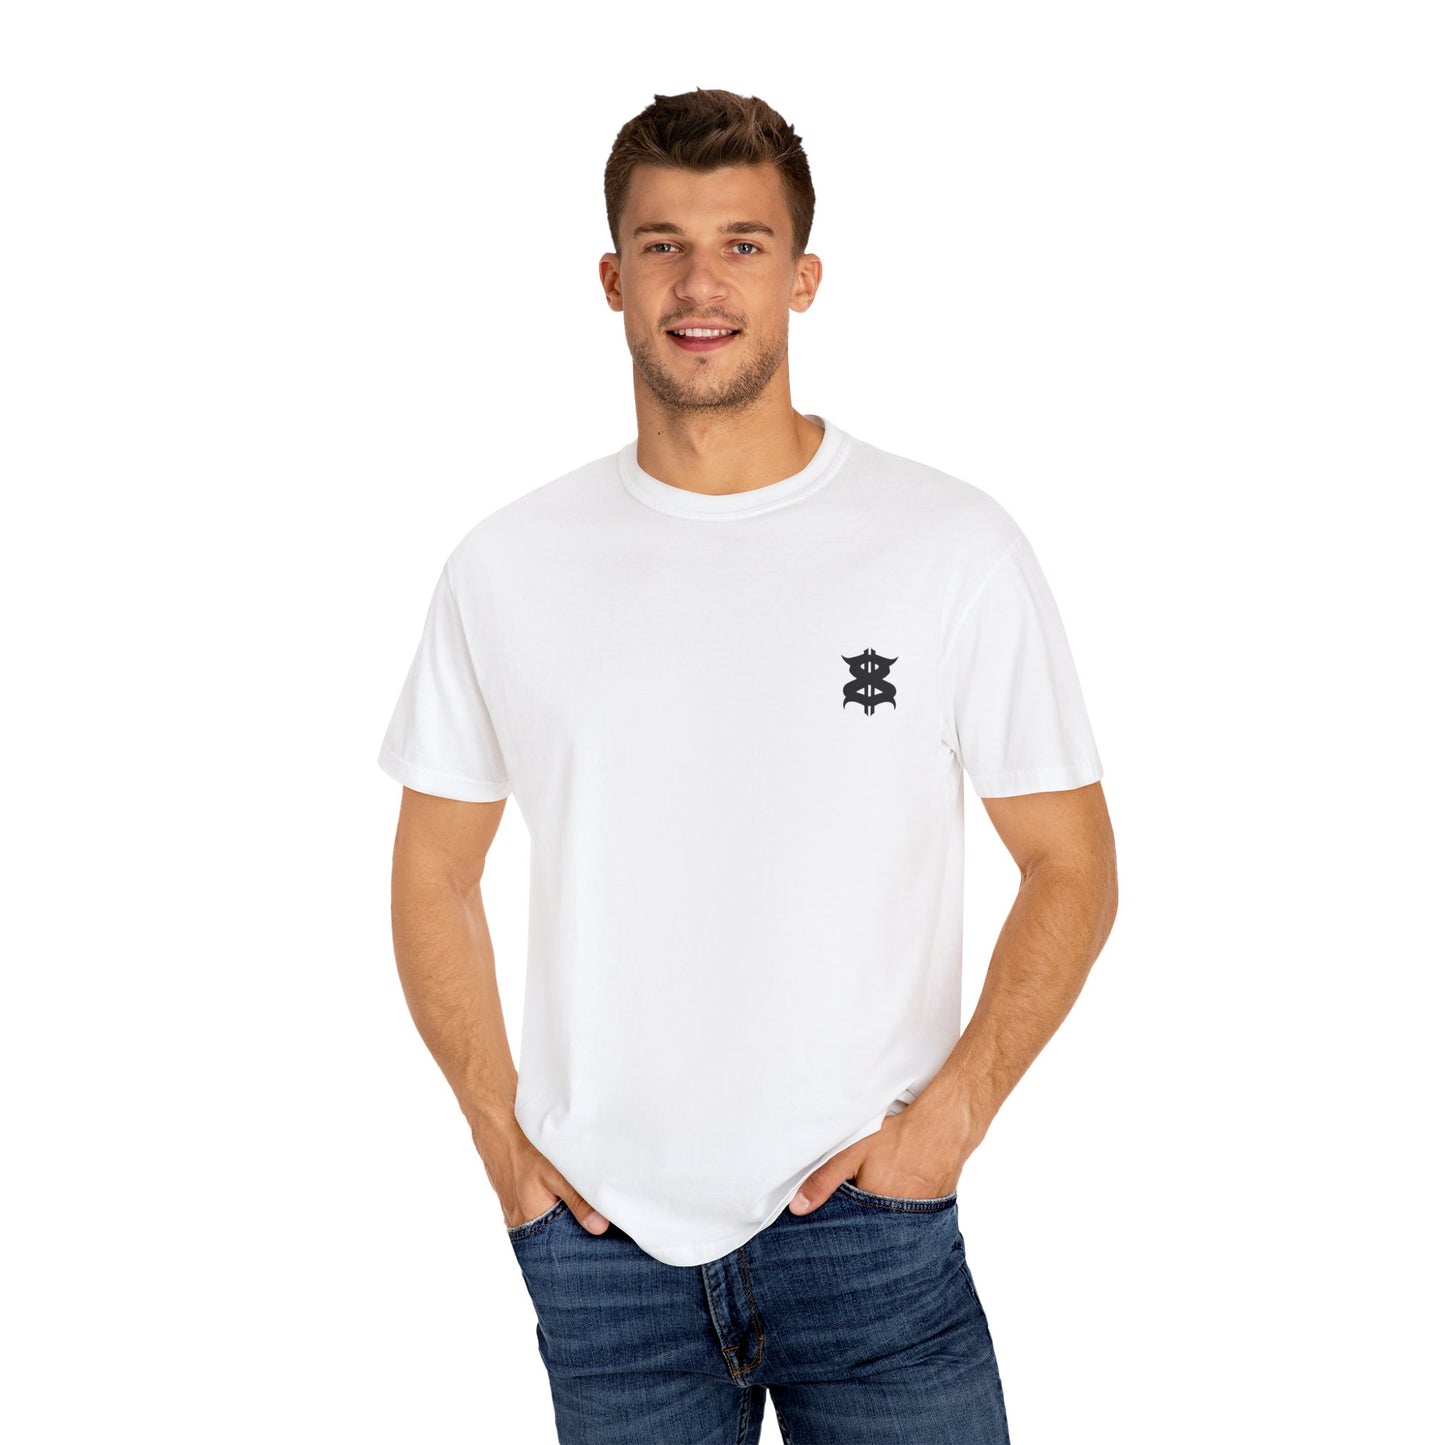 ANGEL Harderground - Unisex Garment-Dyed T-shirt - front & back logo